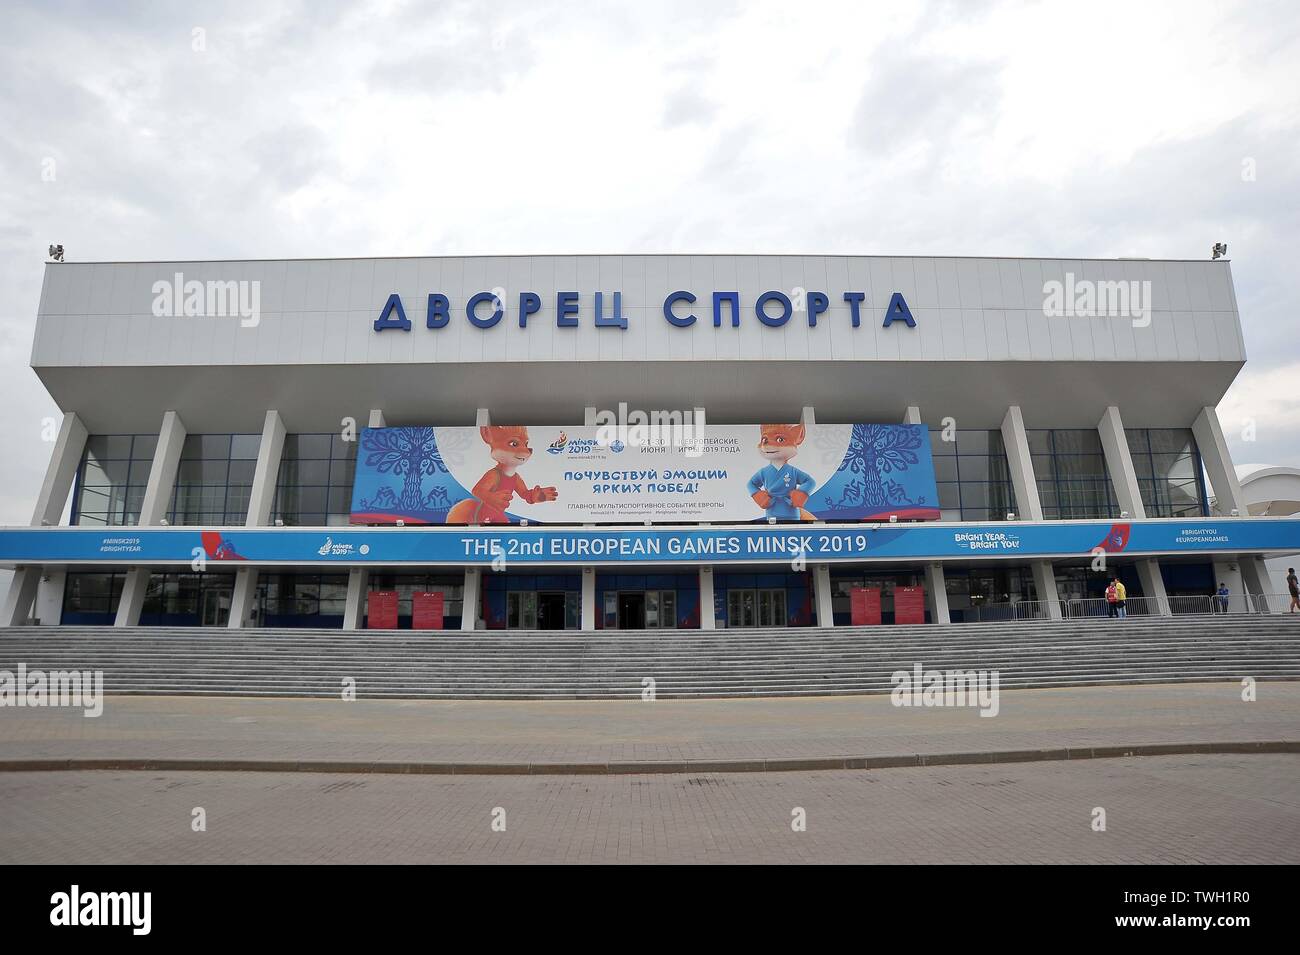 20/06/2019. Minsk. La Bielorussia. Palazzo dello Sport con Minsk2019 branding. Viste di Minsk durante il 2019 European games. Minsk. La Bielorussia. 20/06/2019. Foto Stock